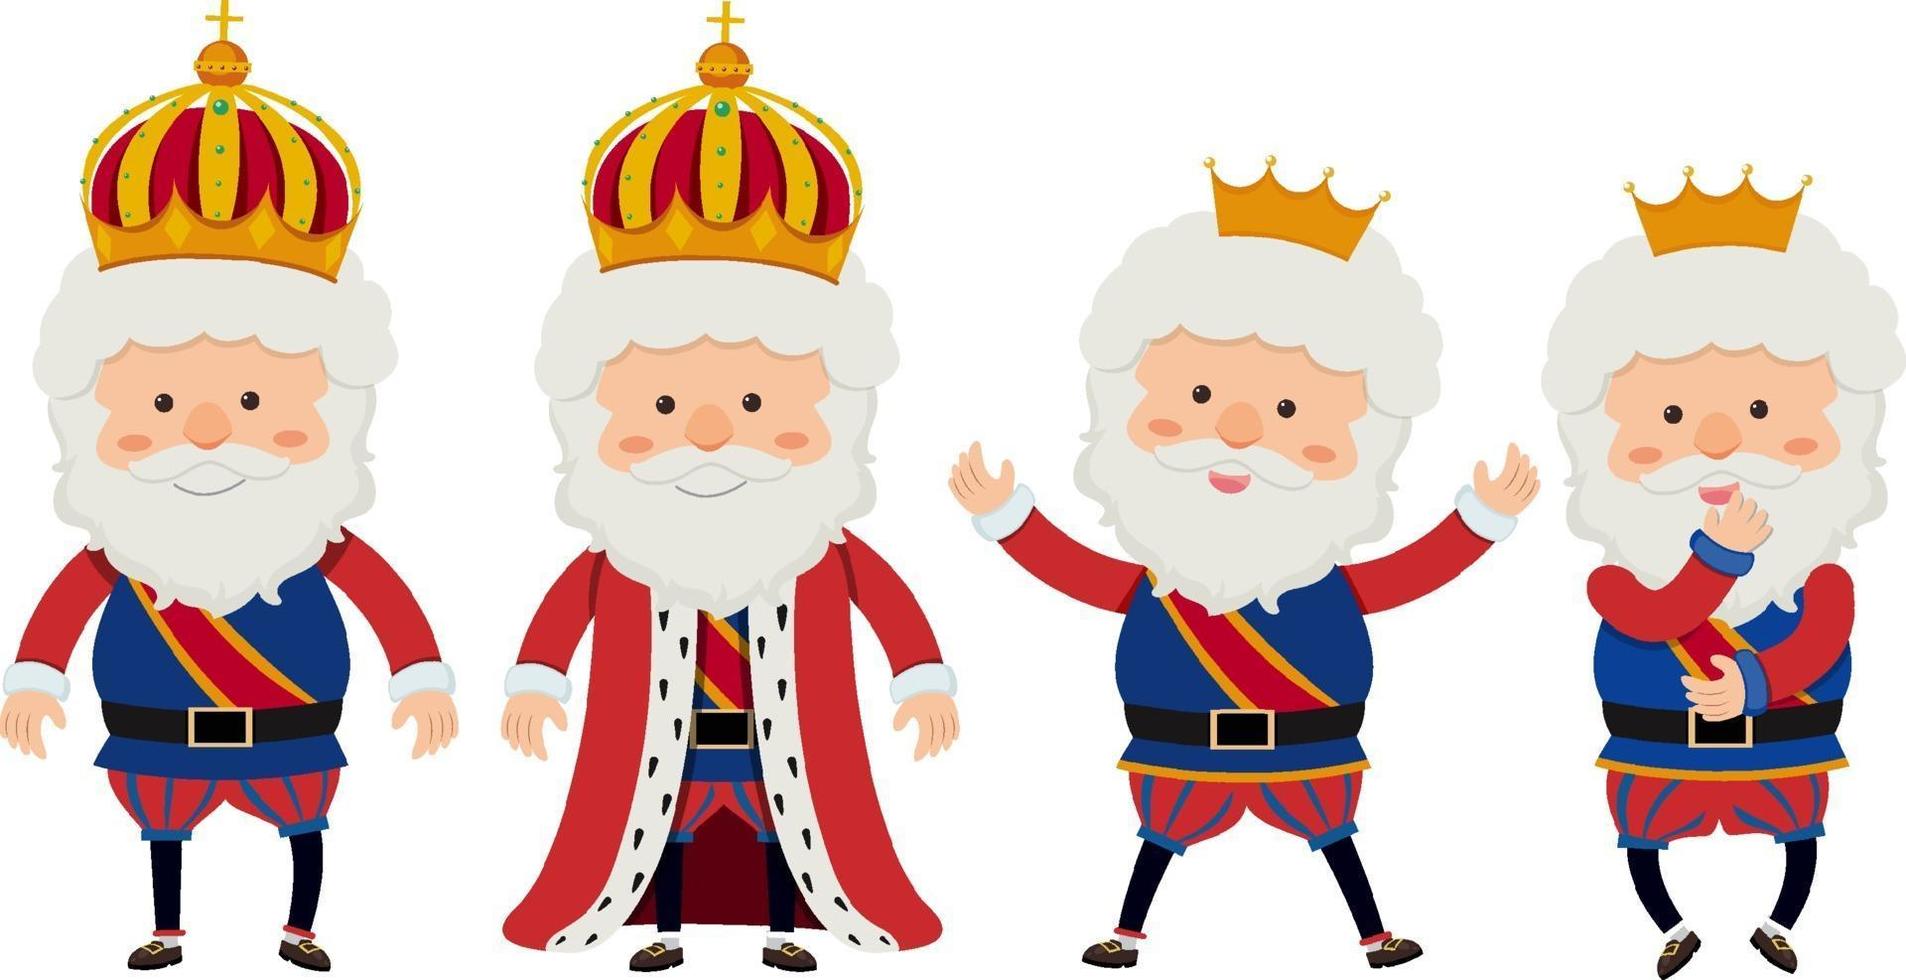 personnage de dessin animé d'un roi avec des poses différentes vecteur